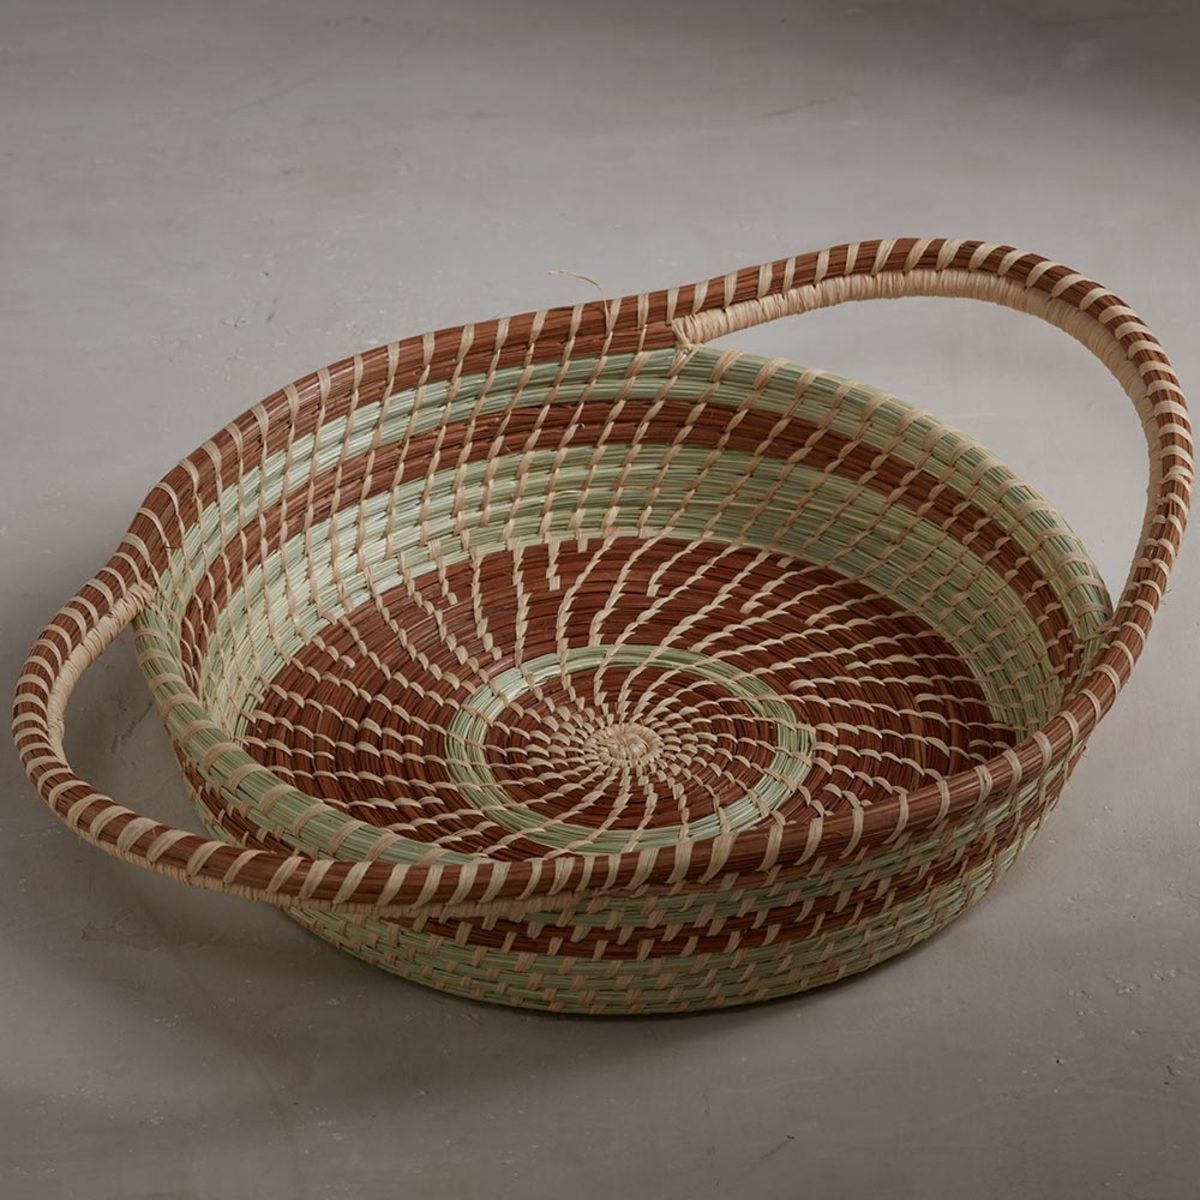 Handwoven Guatemalan Display Basket - Round Handled